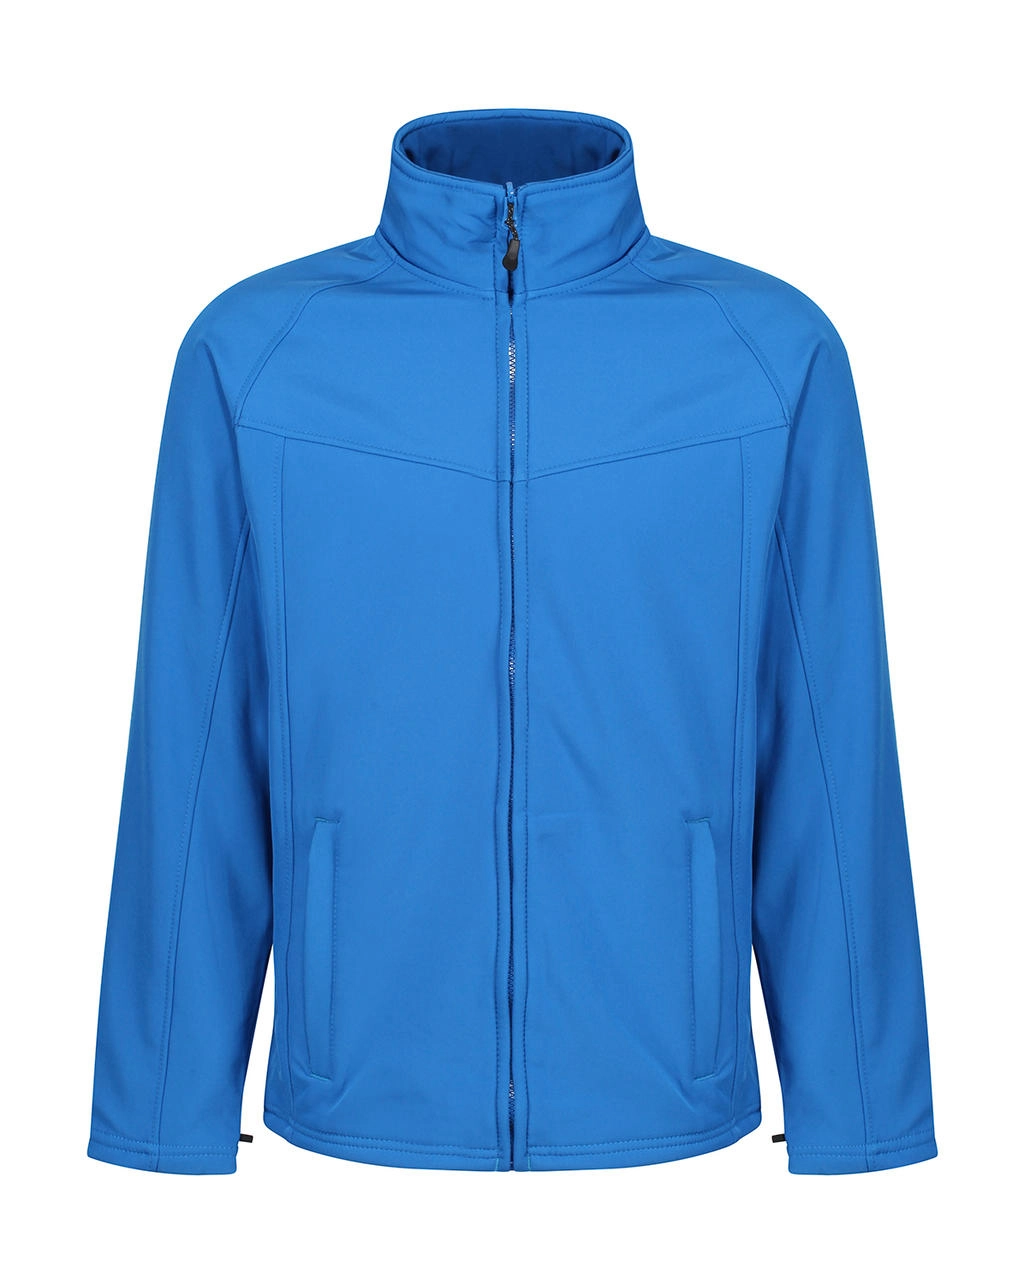 Uproar Softshell Jacket zum Besticken und Bedrucken in der Farbe Oxford Blue mit Ihren Logo, Schriftzug oder Motiv.